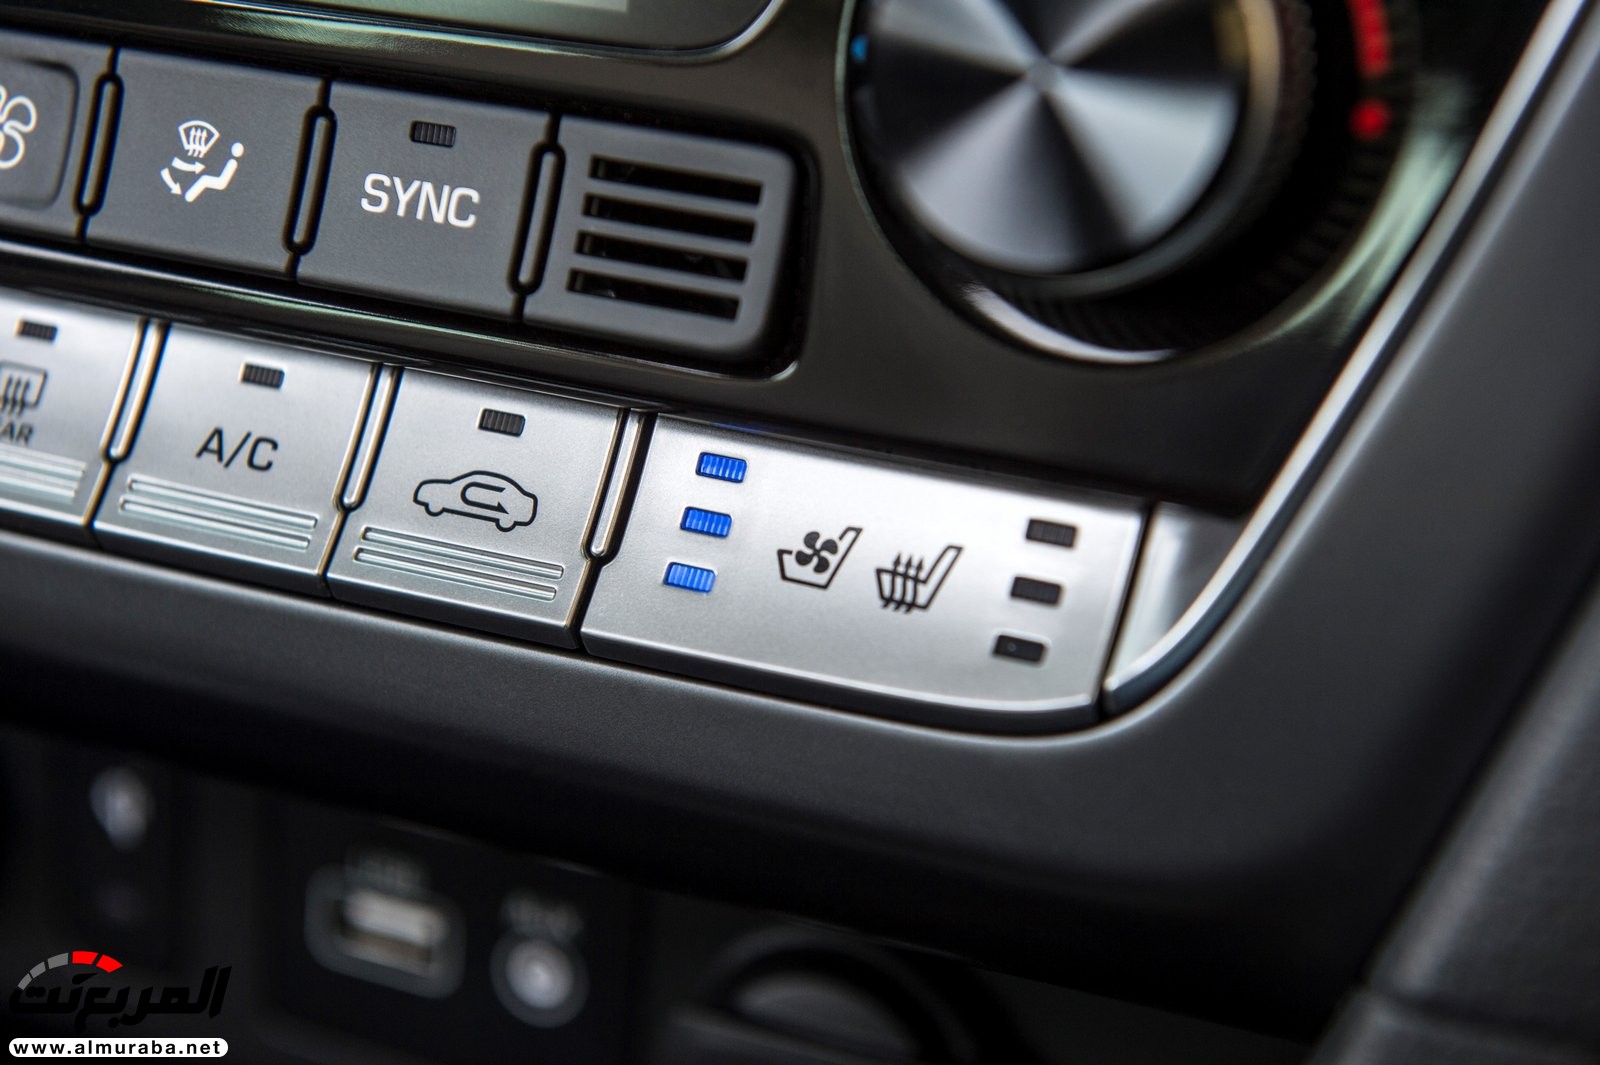 هيونداي سوناتا 2018 المحدثة تحصل على تحديثات خارجية وداخلية "صور وفيديو واسعار" Hyundai Sonata 101